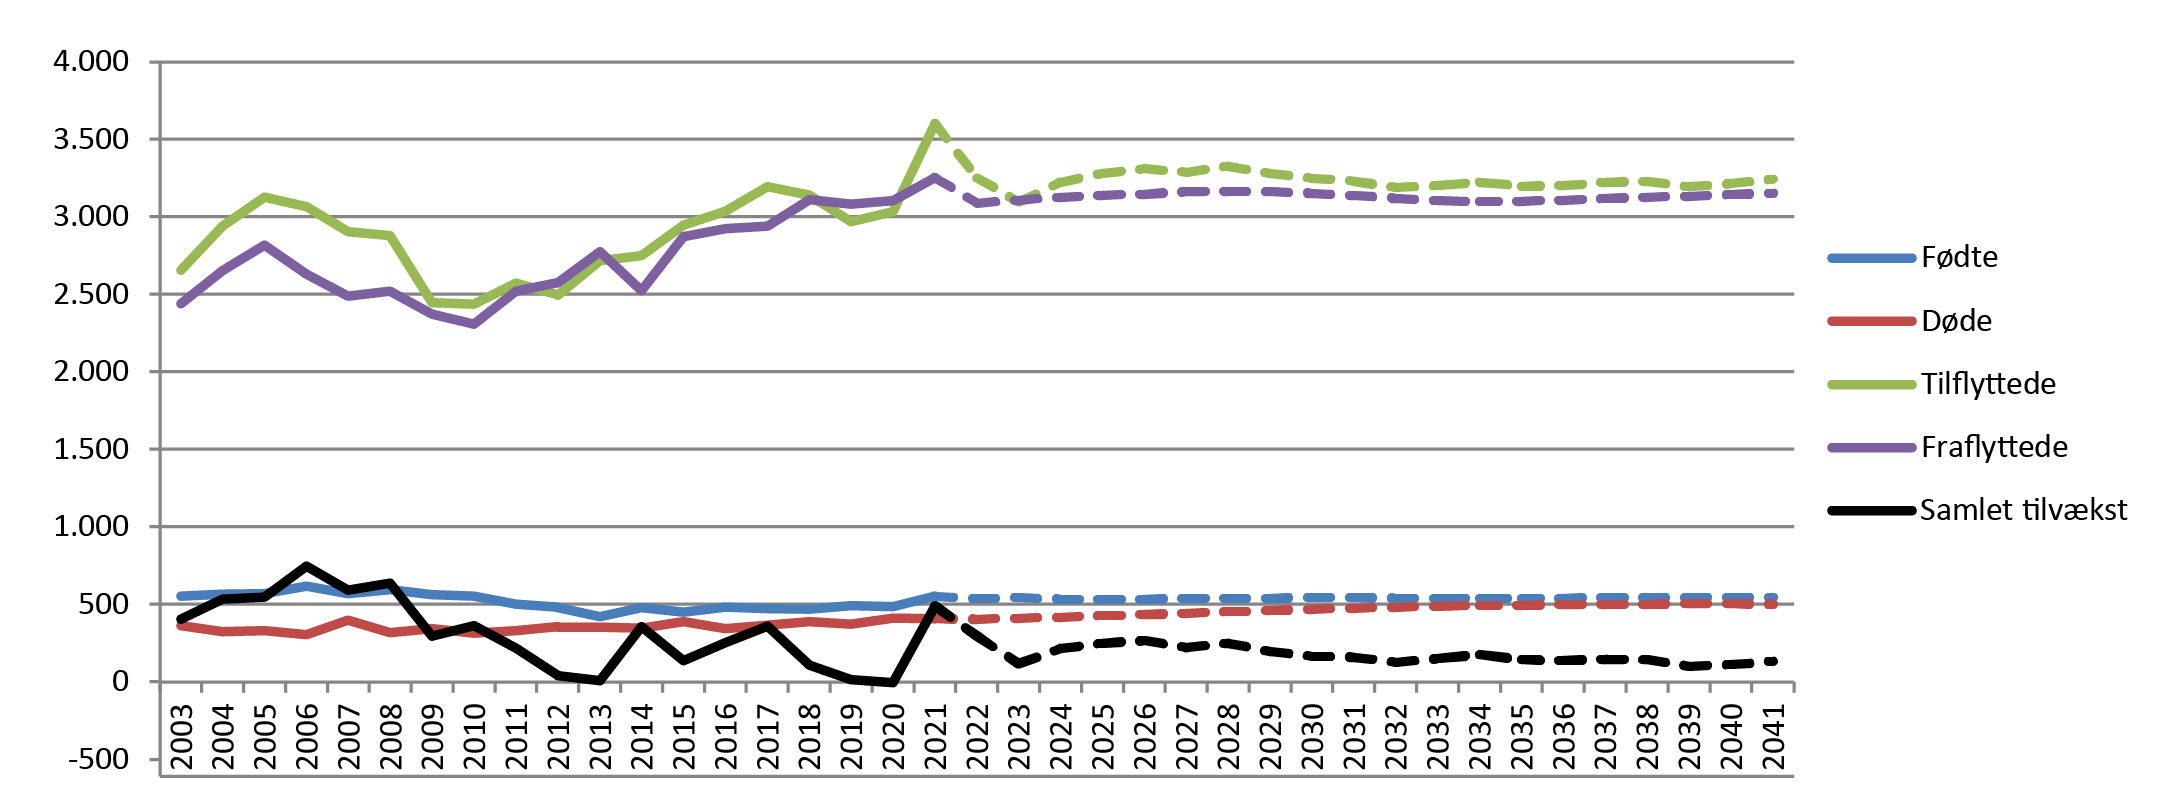 Figur 3. Befolkningens samlede udvikling 2003-2041